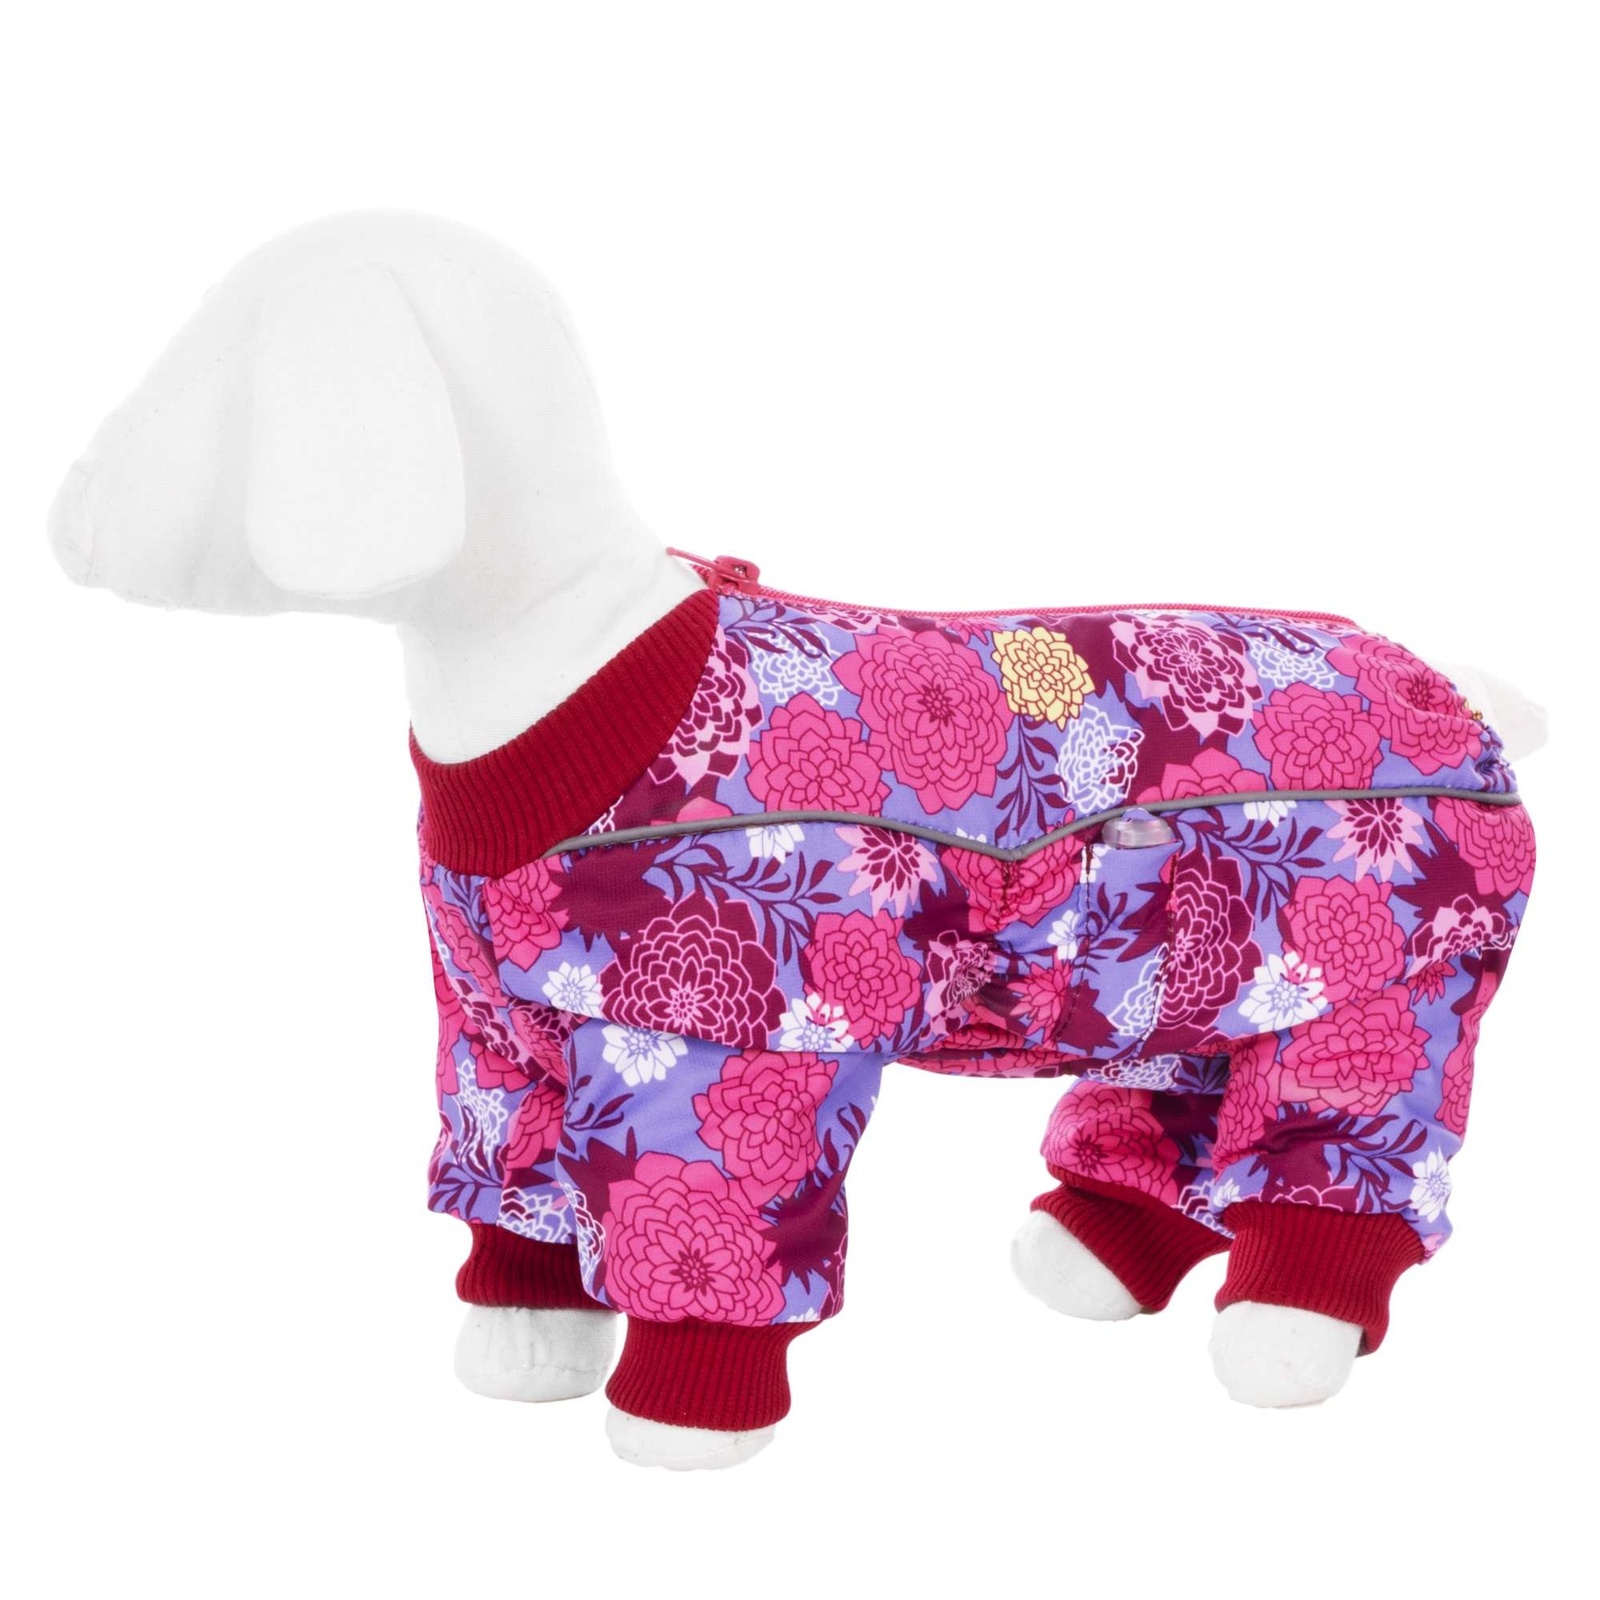 Yami-Yami одежда Yami-Yami одежда комбинезон для собак малых пород, на флисе с рисунком цветы (100 г) yami yami одежда yami yami одежда комбинезон для собак малых пород на флисе с рисунком цветы 100 г